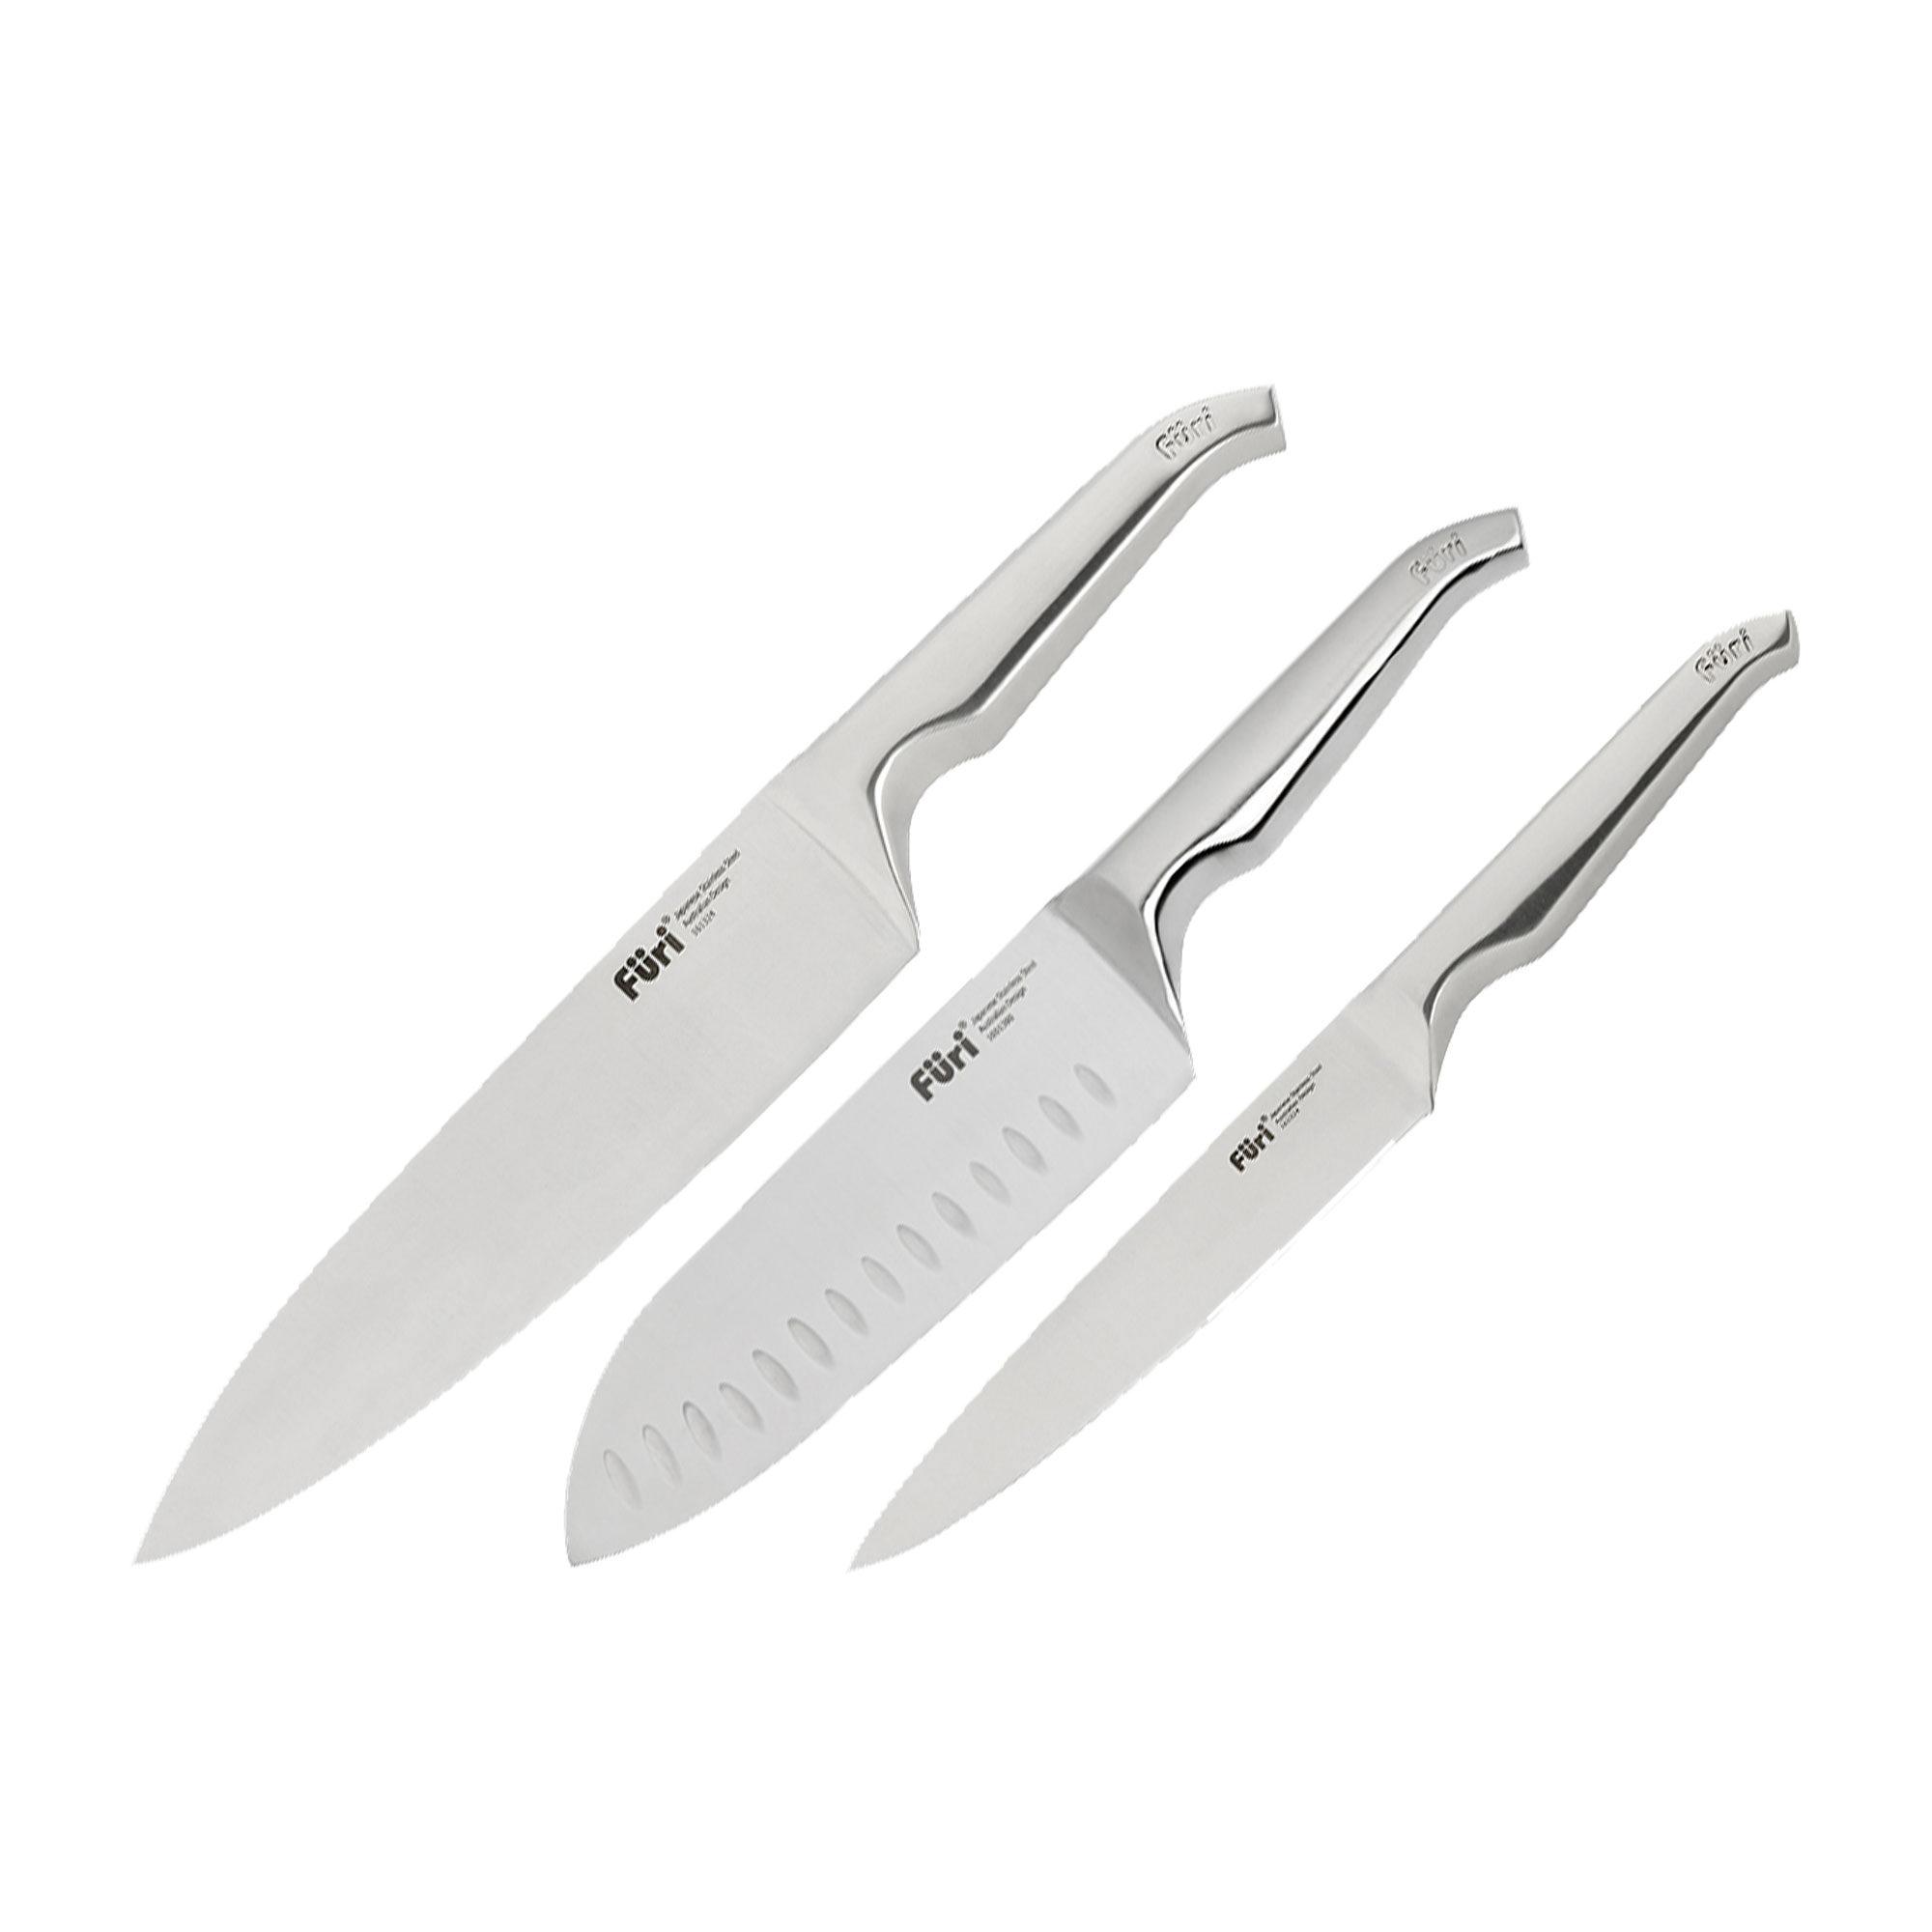 Furi Pro 3pc Knife Set Image 3